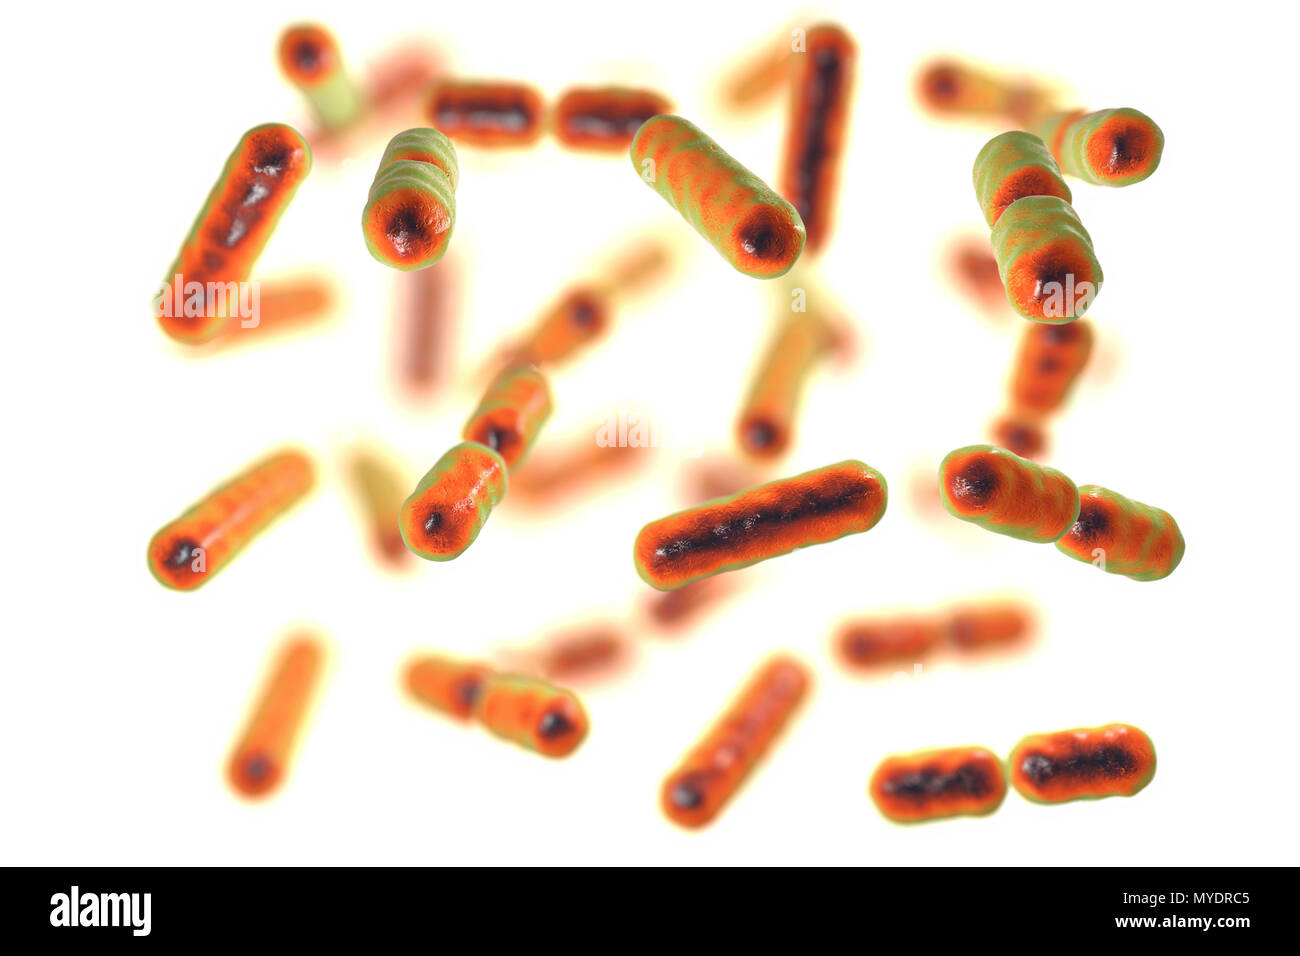 Computer illustrazione di Bacteroides sp. batteri. Questi sono a forma di asta, obbligherà anaerobico gram-negativi, saccharolytic batteri. Il Bacteroides sono i più comuni batteri trovati nell'umana intestinale. Essi sono coinvolti in molte importanti attività metaboliche nella flora umano del colon, compresa la fermentazione di carboidrati, l'utilizzazione di sostanze azotate, e la biotrasformazione di acidi biliari e altri steroidi. Quando il Bacteroides sfuggire il colon, essi sono responsabili di molti tipi di infezioni e ascessi che possono verificarsi in tutto il corpo compresa la parte superiore del corpo, Foto Stock